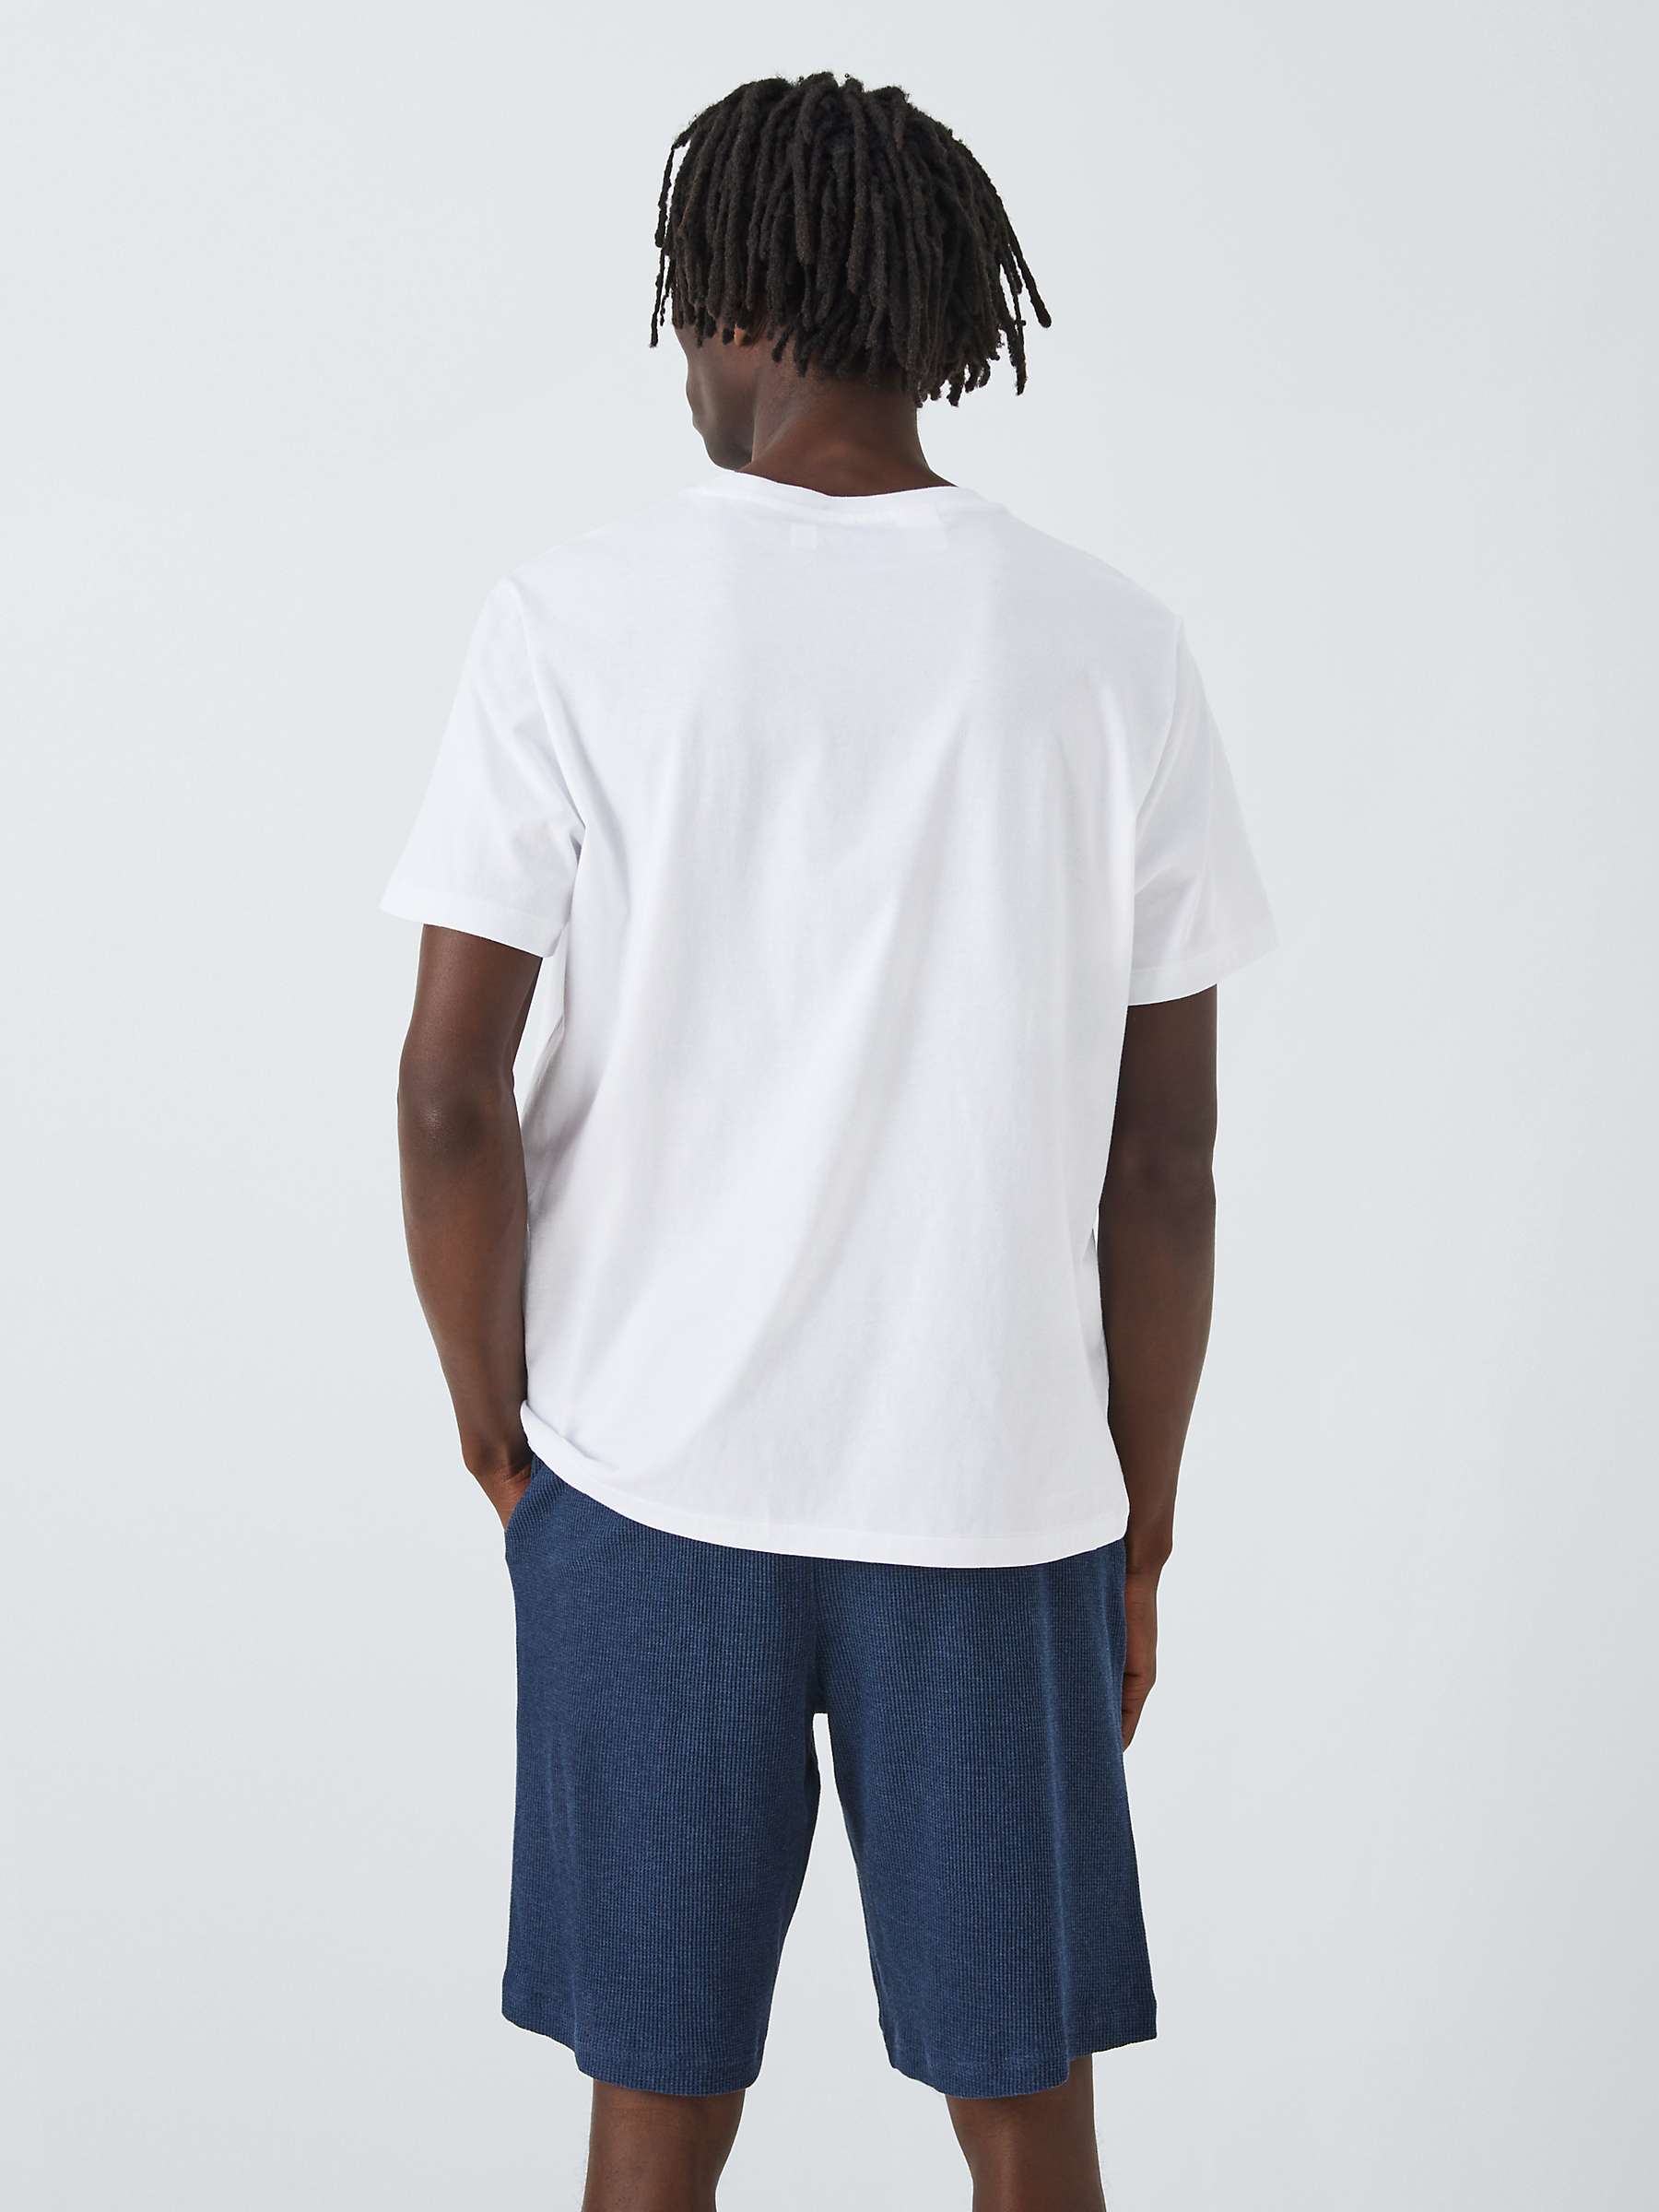 Buy Ralph Lauren Short Sleeve Crew Pyjama Top, White Online at johnlewis.com